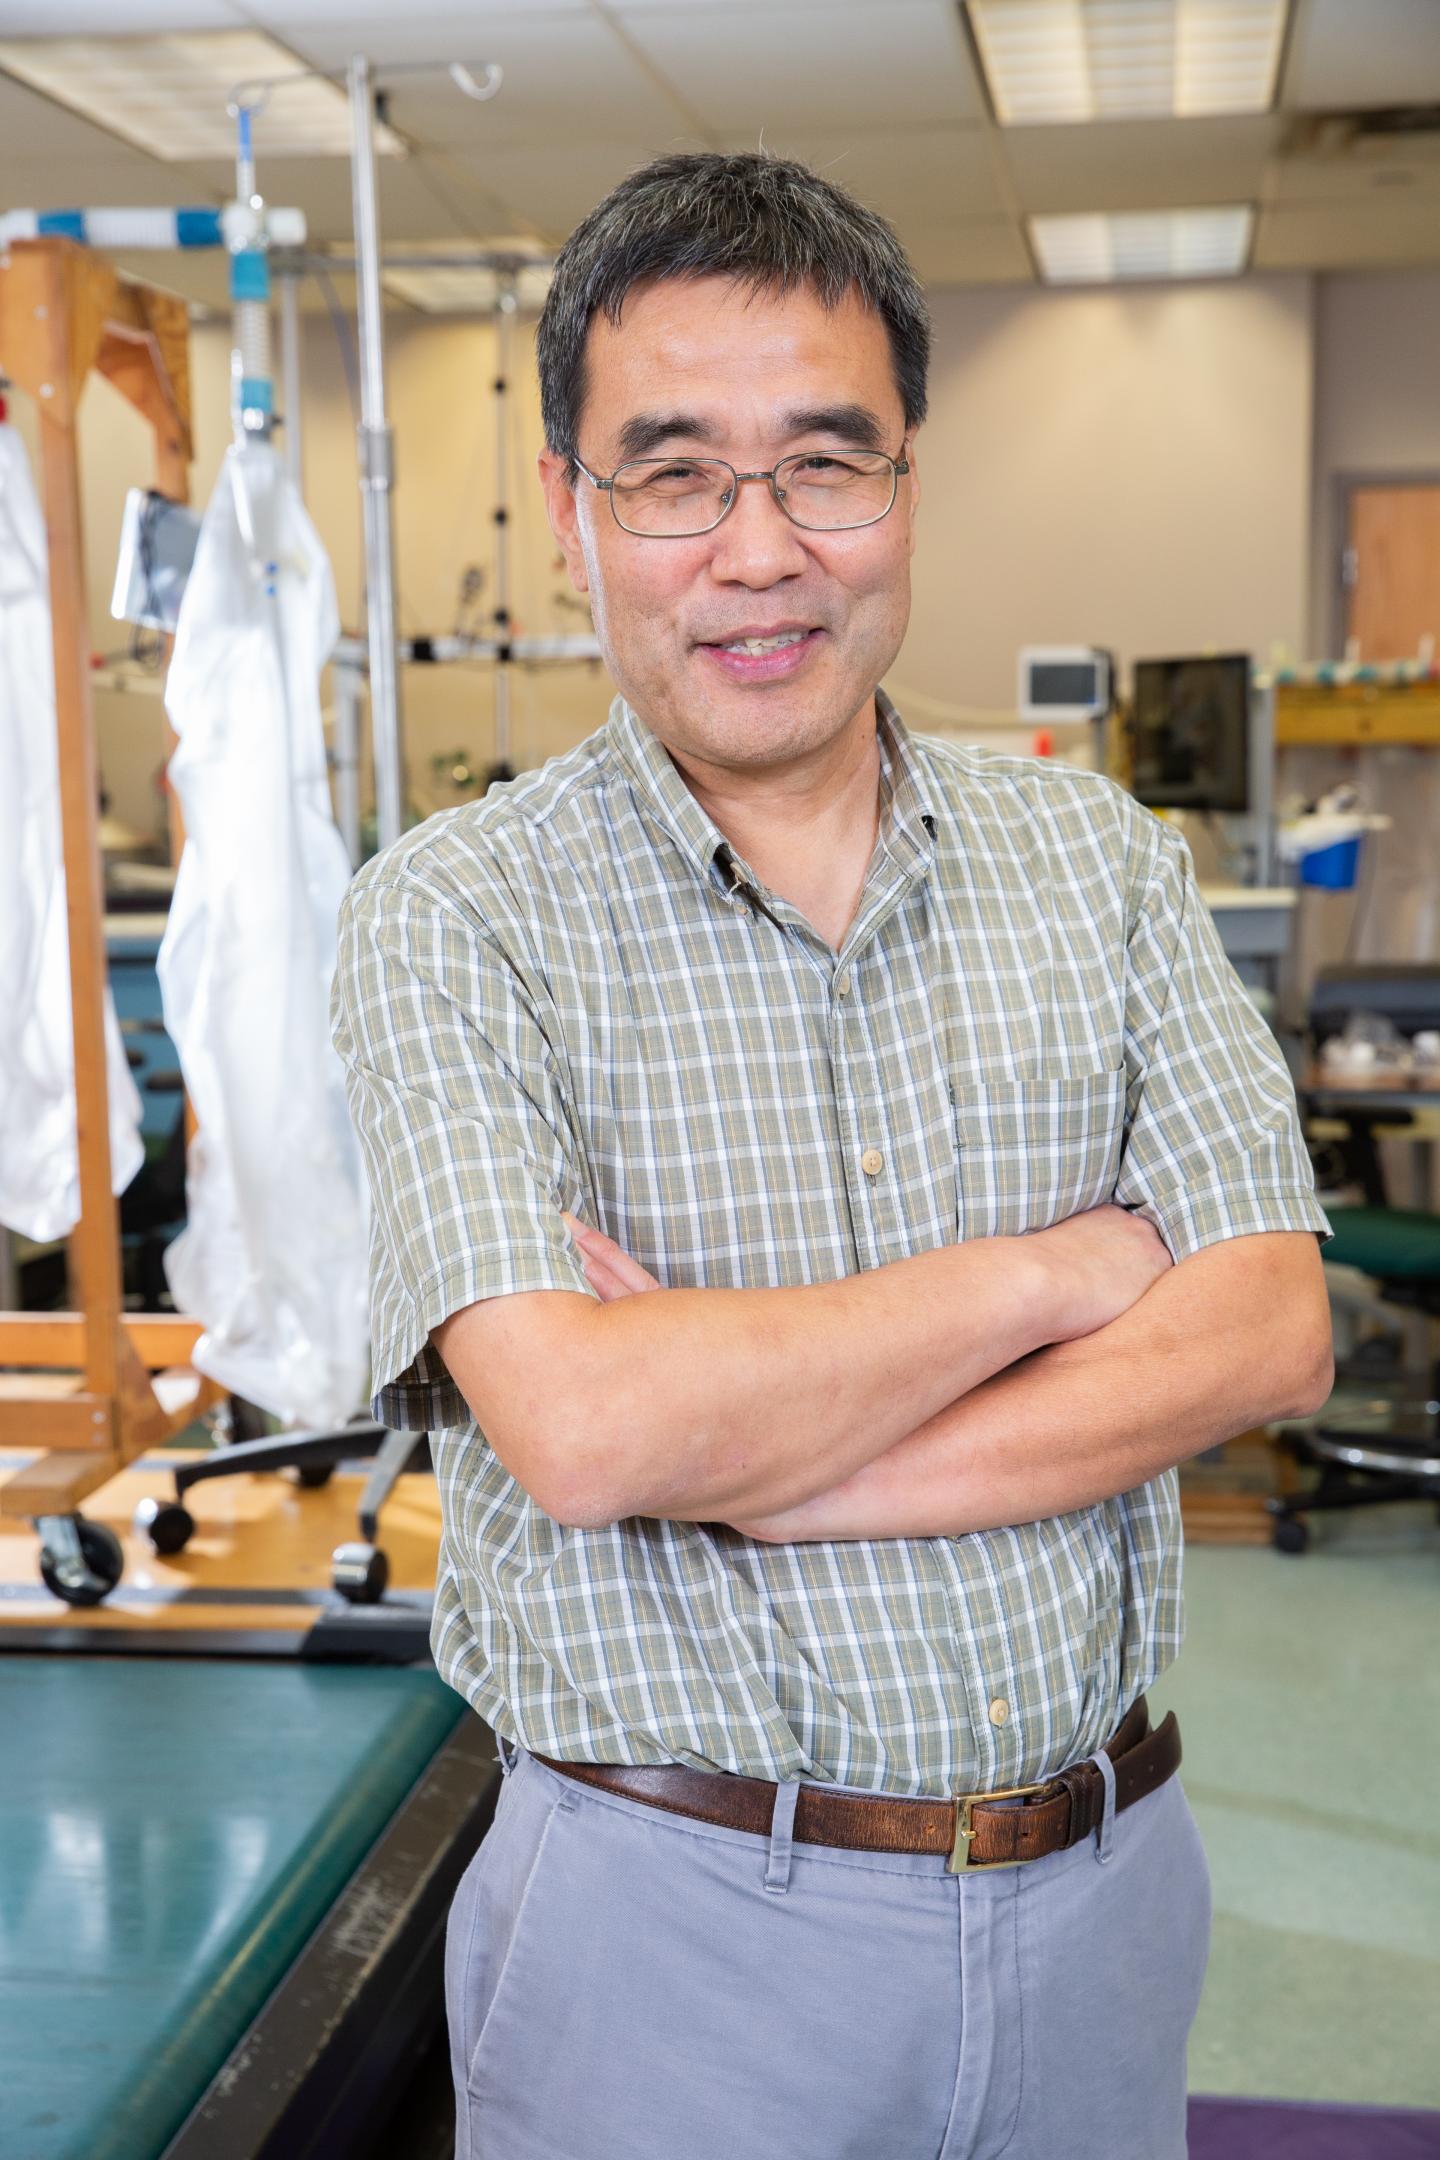 Rong Zhang, Ph.D.